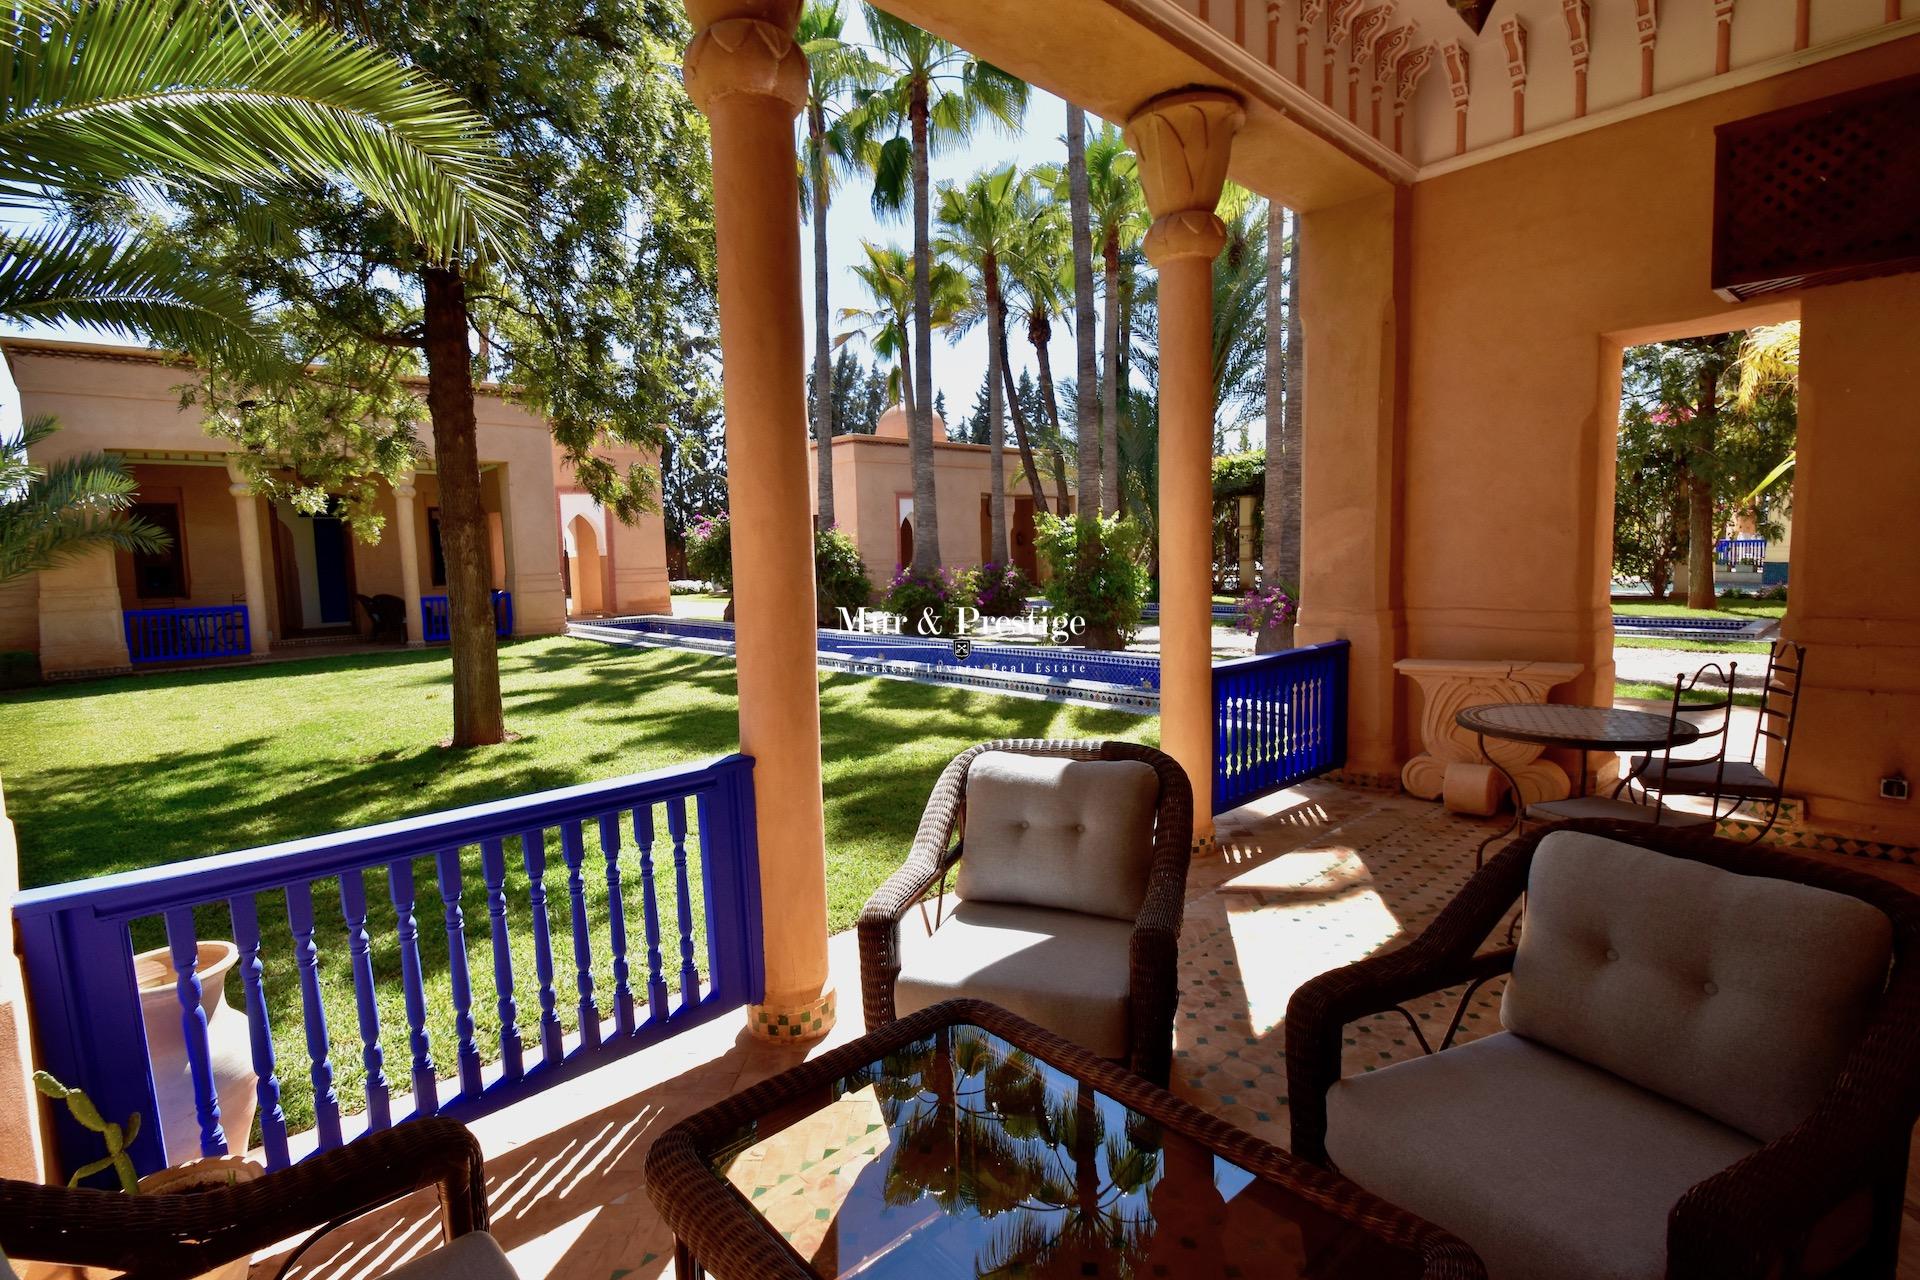 Maison à vendre Charles Boccara sur un hectare à Marrakech 